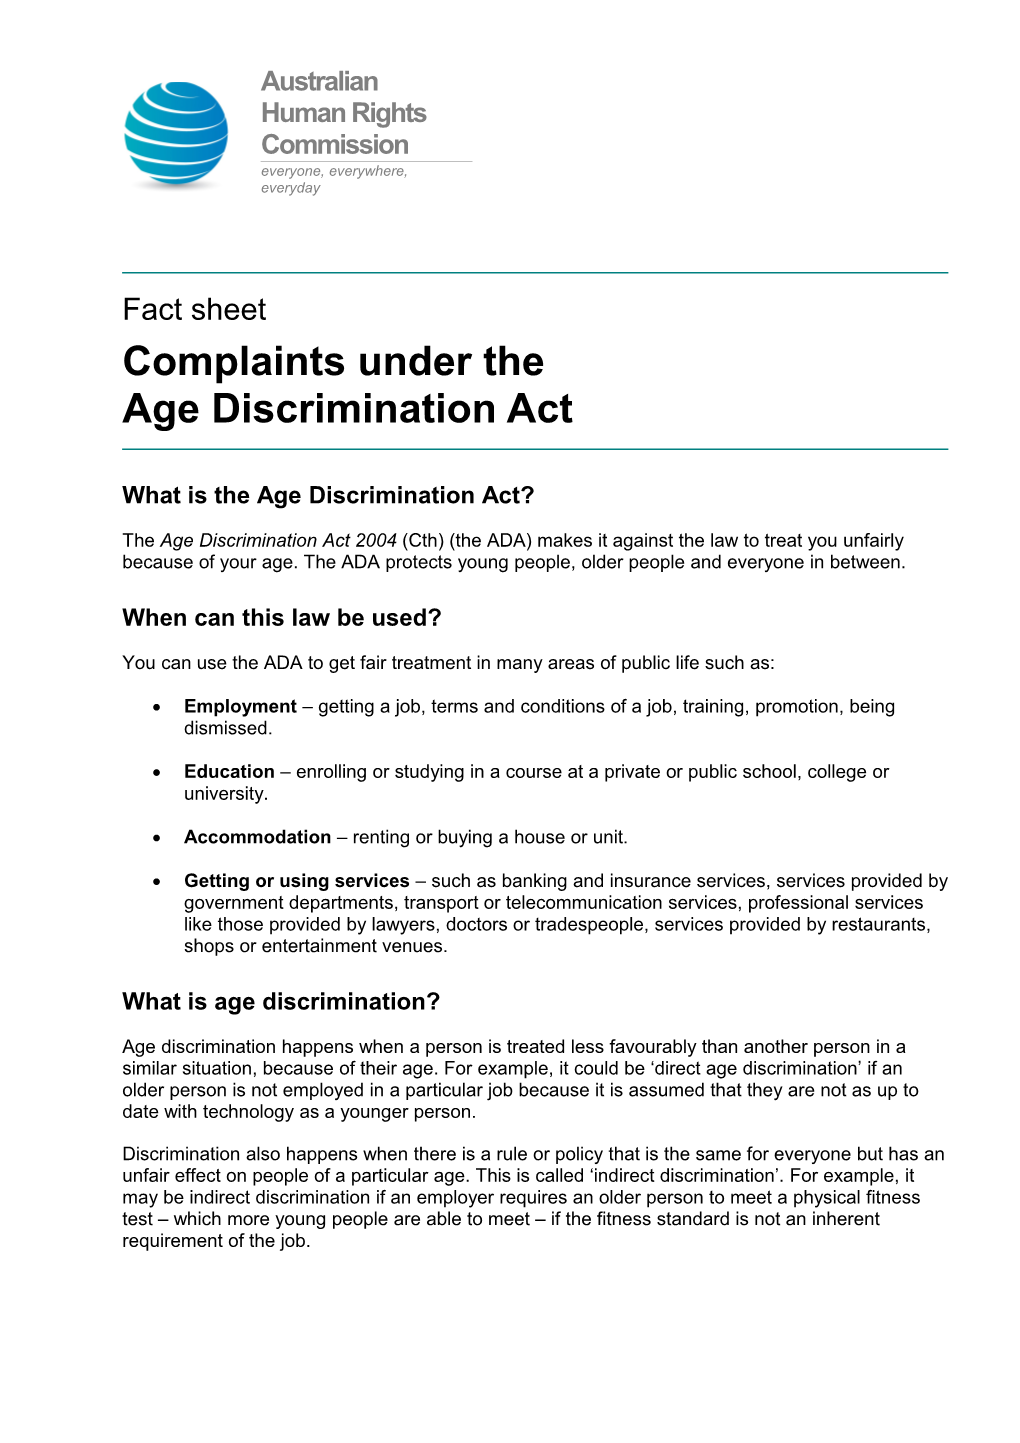 Factsheet Complaints Under the Age Discrimination Act